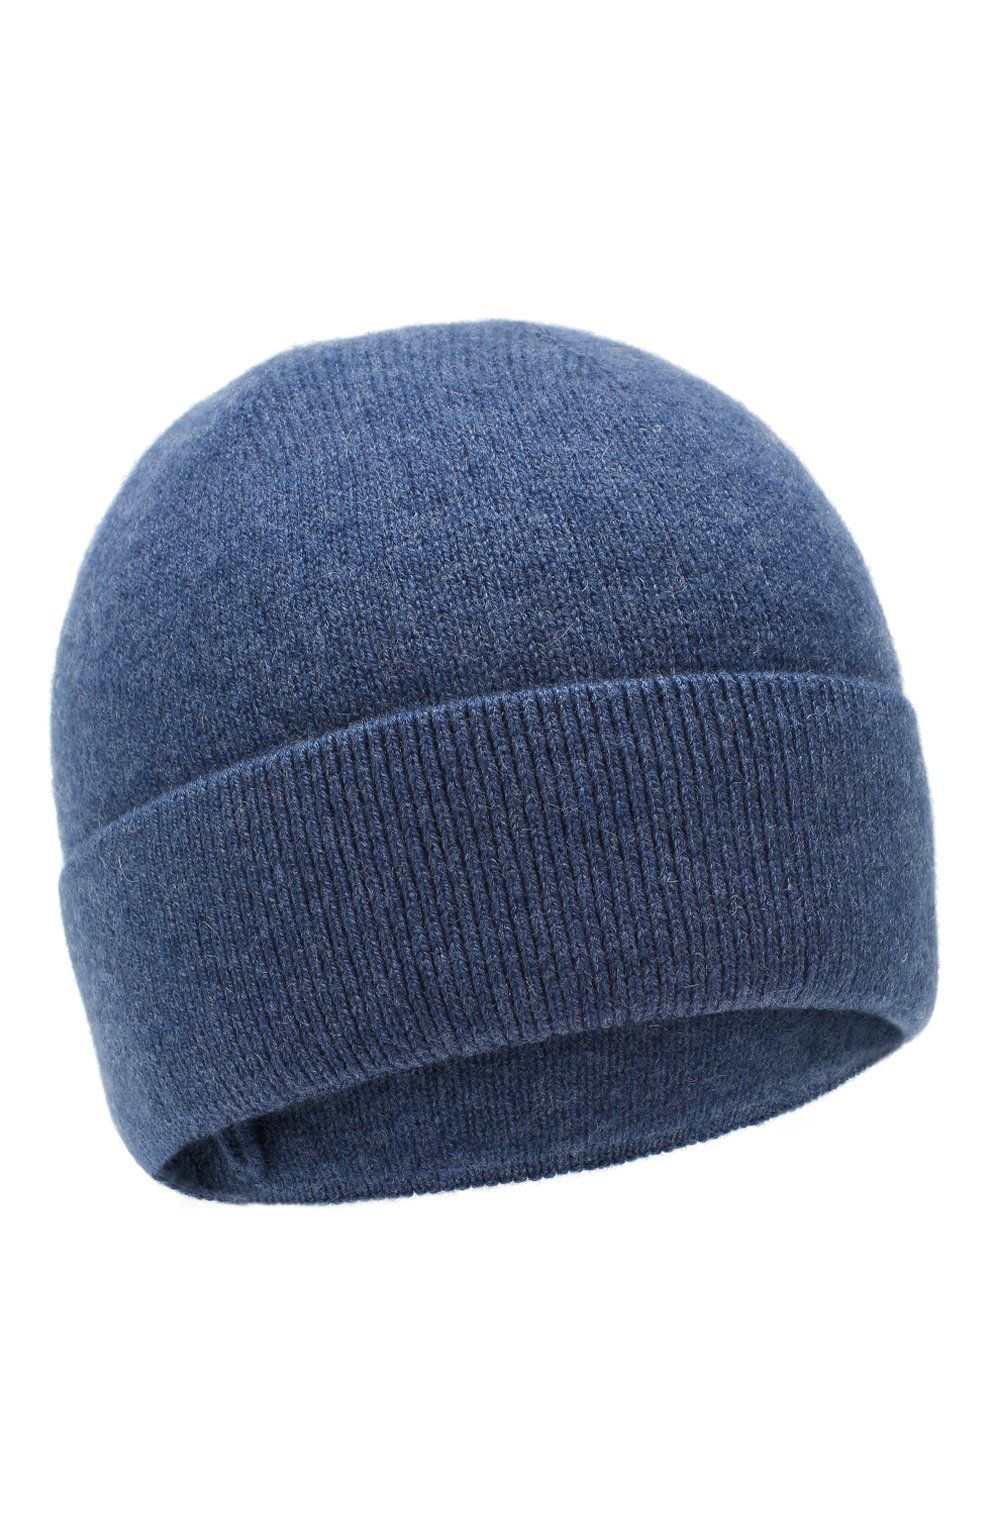 Детского шапка poland CANOE синего цвета, арт. 5915340 | Фото 1 (Материал: Текстиль, Кашемир, Шерсть)